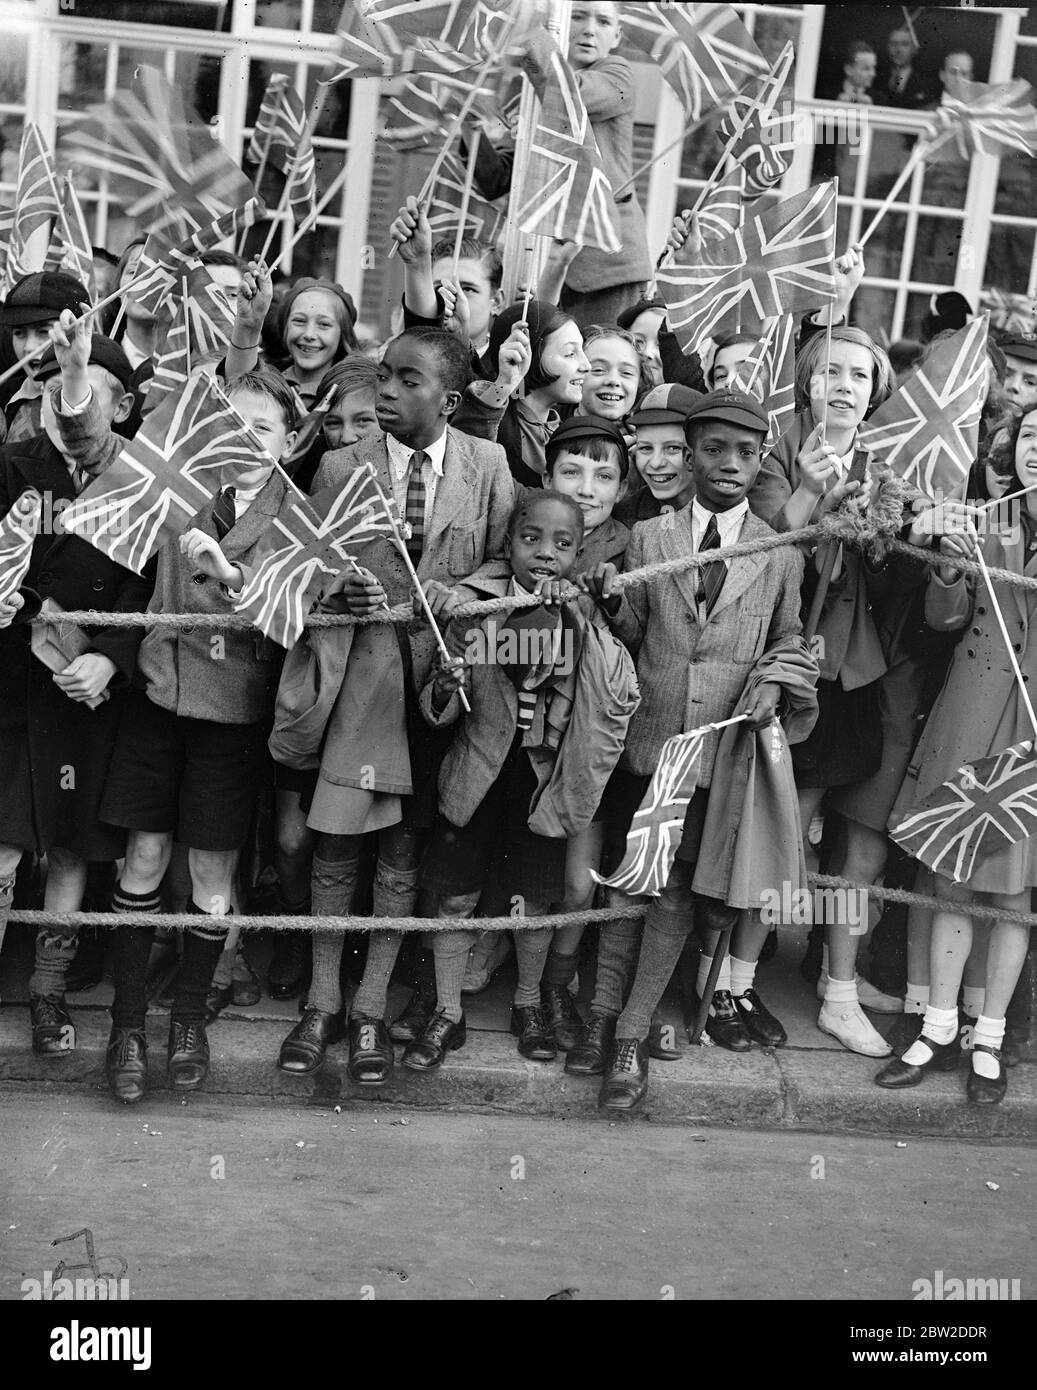 1200 bambini, provenienti da più di 100 scuole, erano tra le grandi folle che hanno salutato la Regina Maria quando ha aperto la nuova estensione del Â£90,000 al Lambeth Town Hall, Brixton. Foto: Bambini neri che sventolano bandiere quando la regina Maria è arrivata. 14 ottobre 1938 Foto Stock